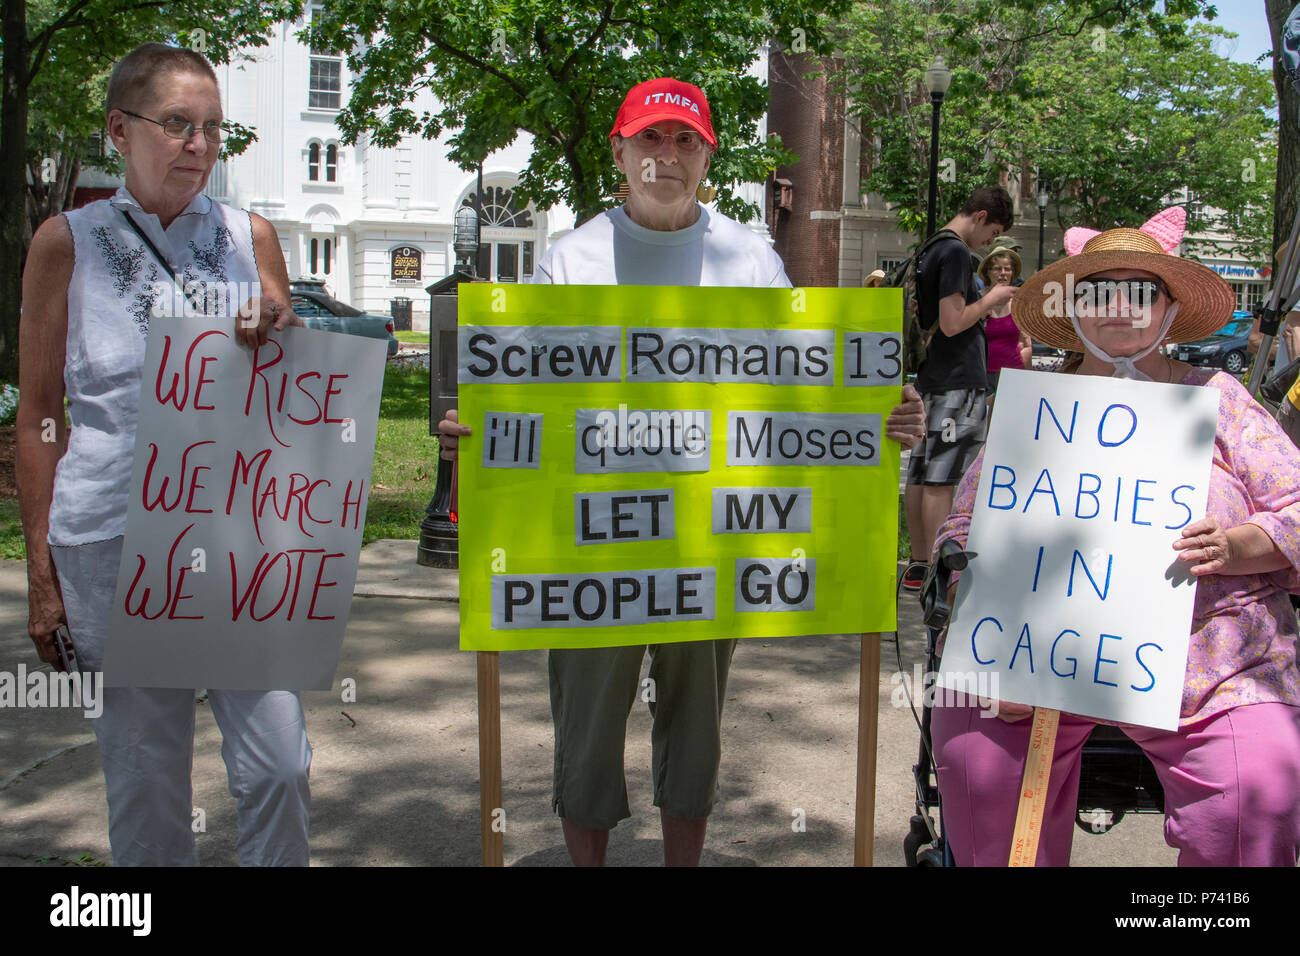 KEENE, NEW HAMPSHIRE/USA - 30. Juni 2018: drei Demonstranten halten Schilder auf einer Kundgebung gegen die Einwanderungspolitik der Trumpf-Verwaltung. Stockfoto